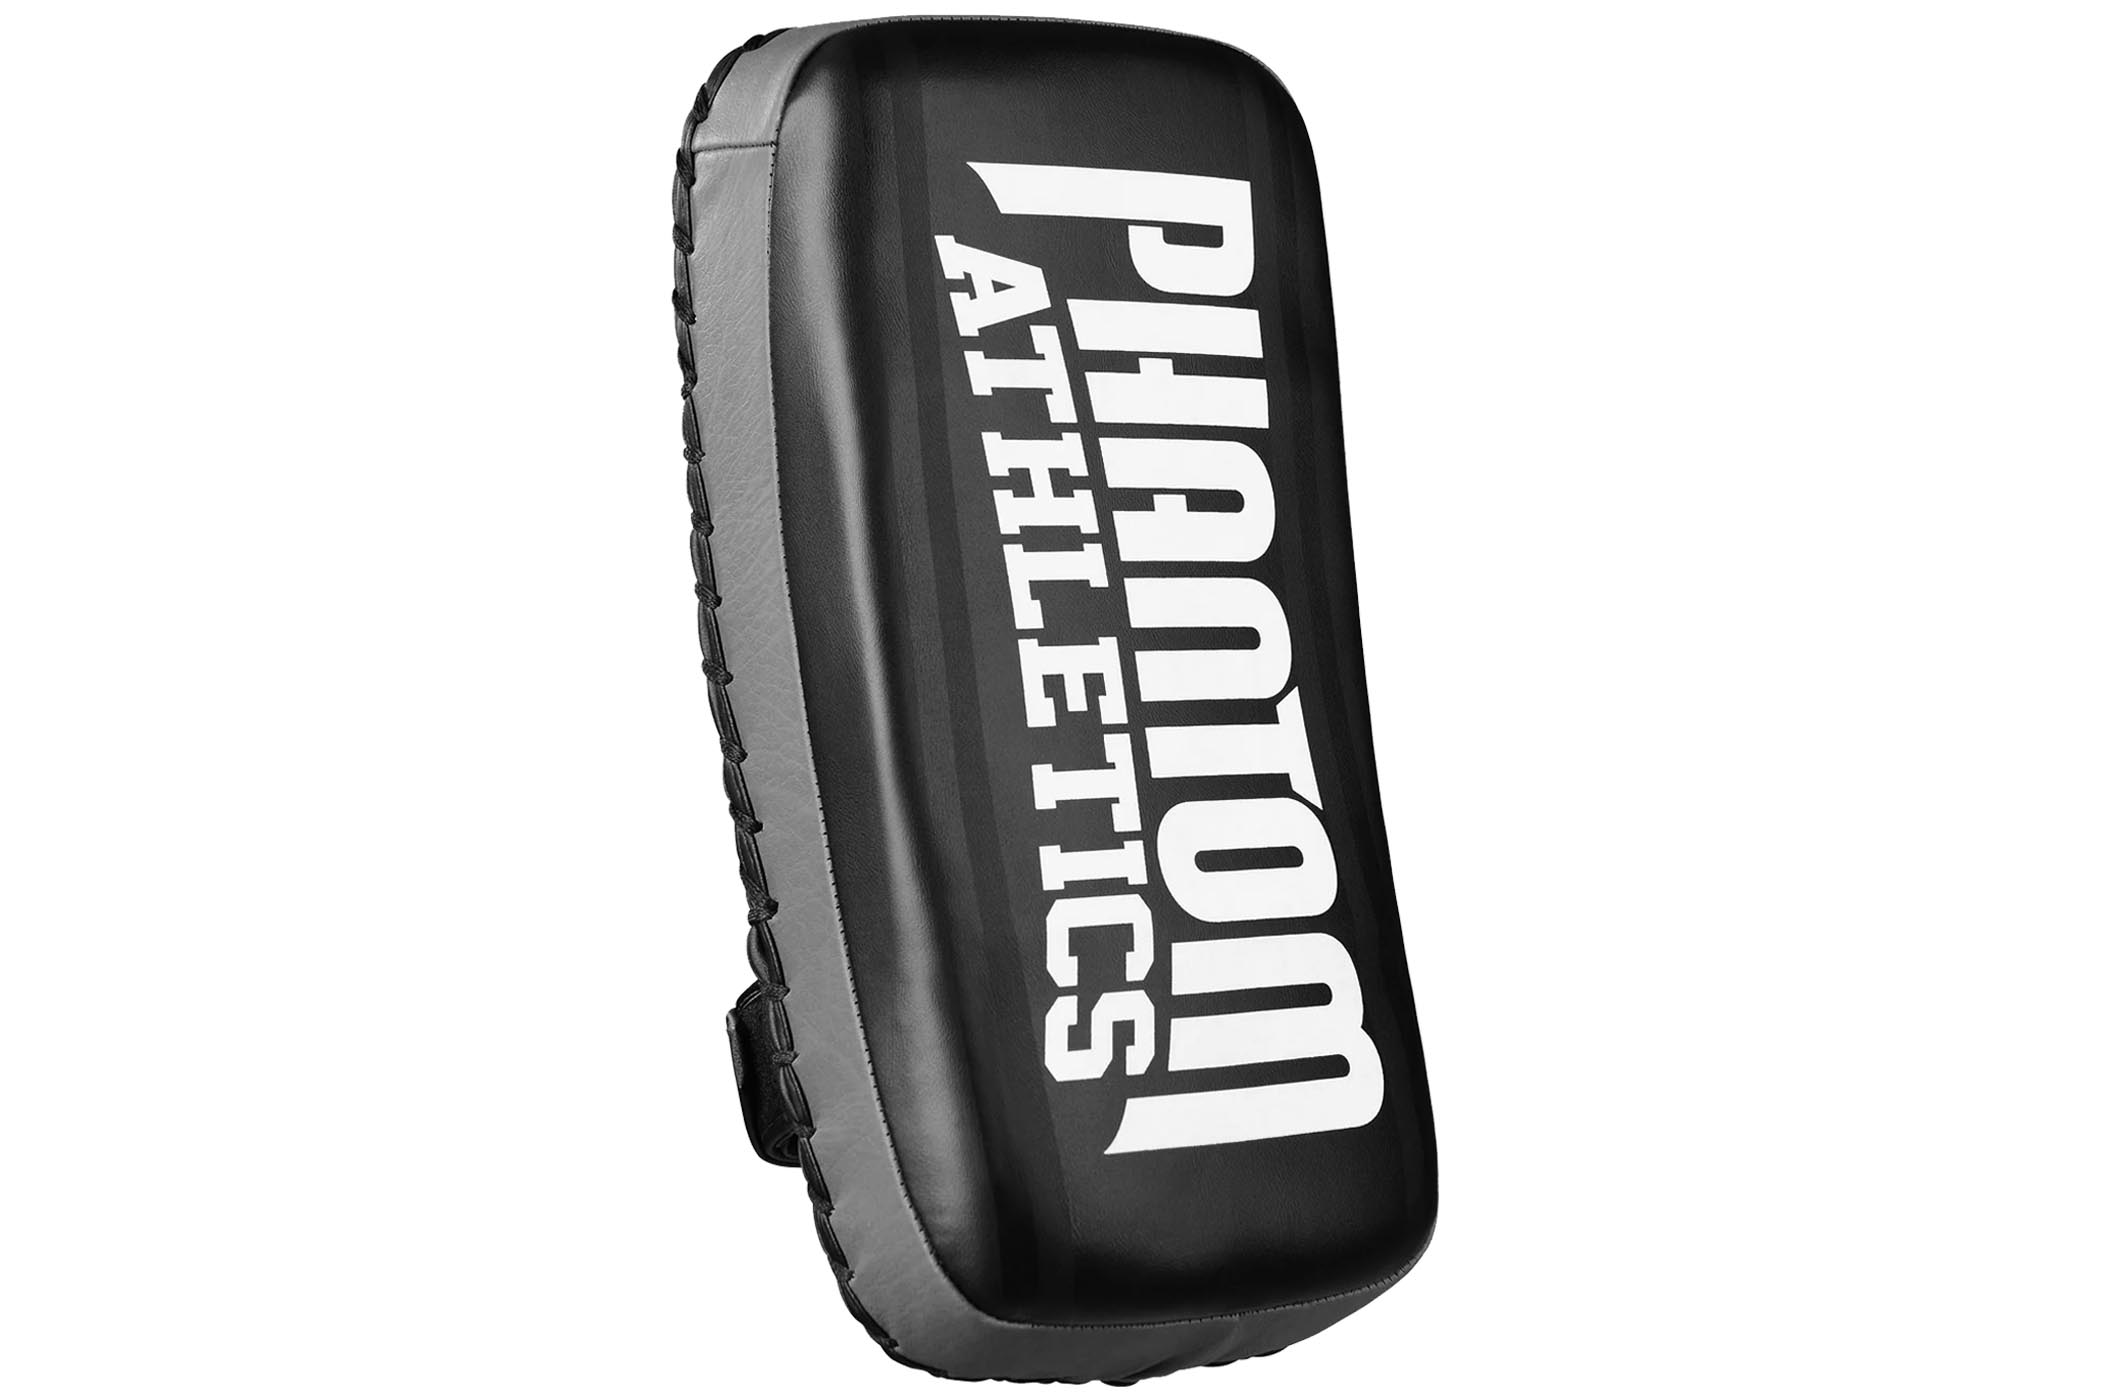 Pao Phantom Athletics - Pao boxe - lecoinduring